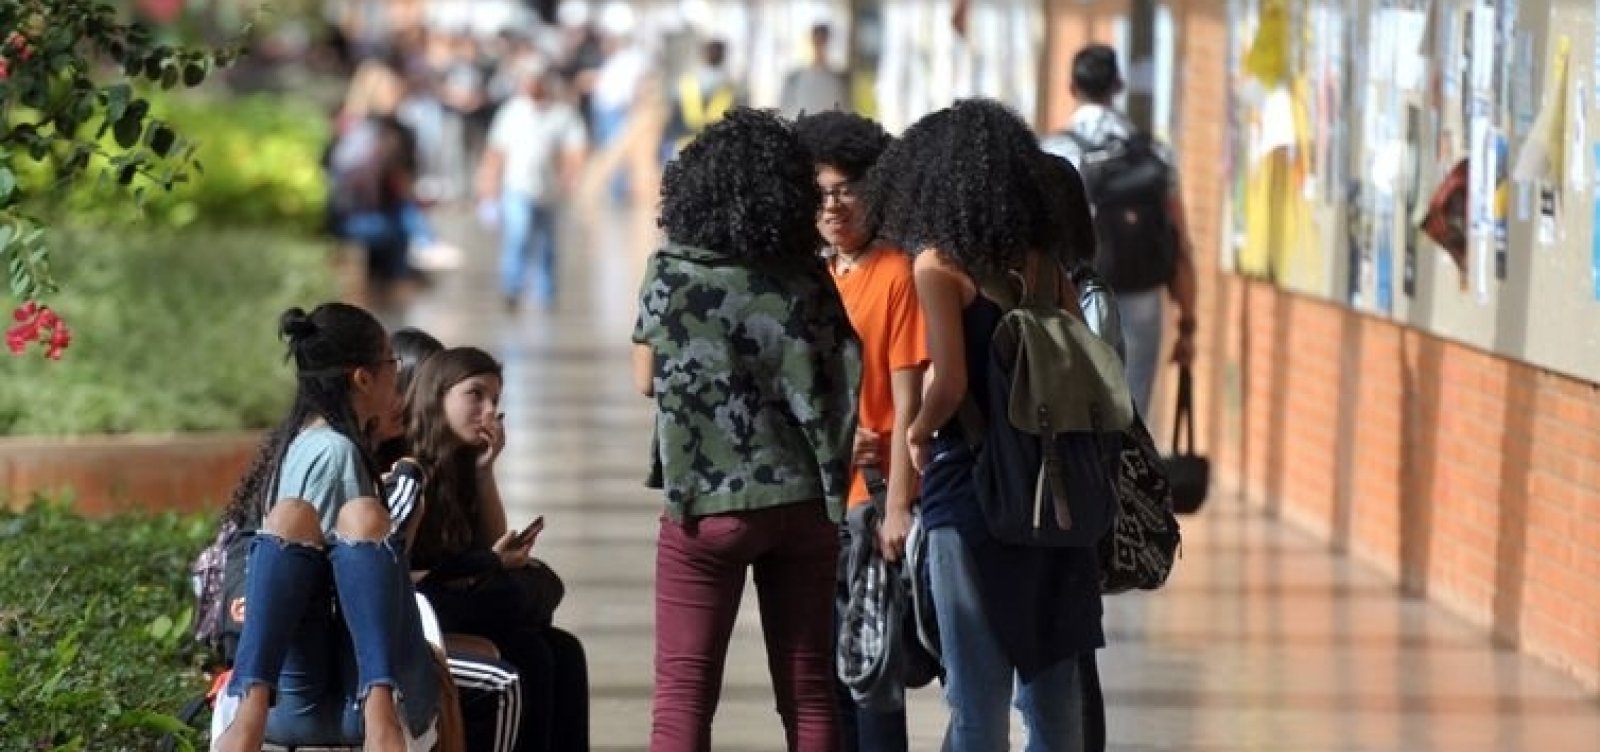 Pretos e pardos são maioria nas universidades públicas brasileiras, diz IBGE